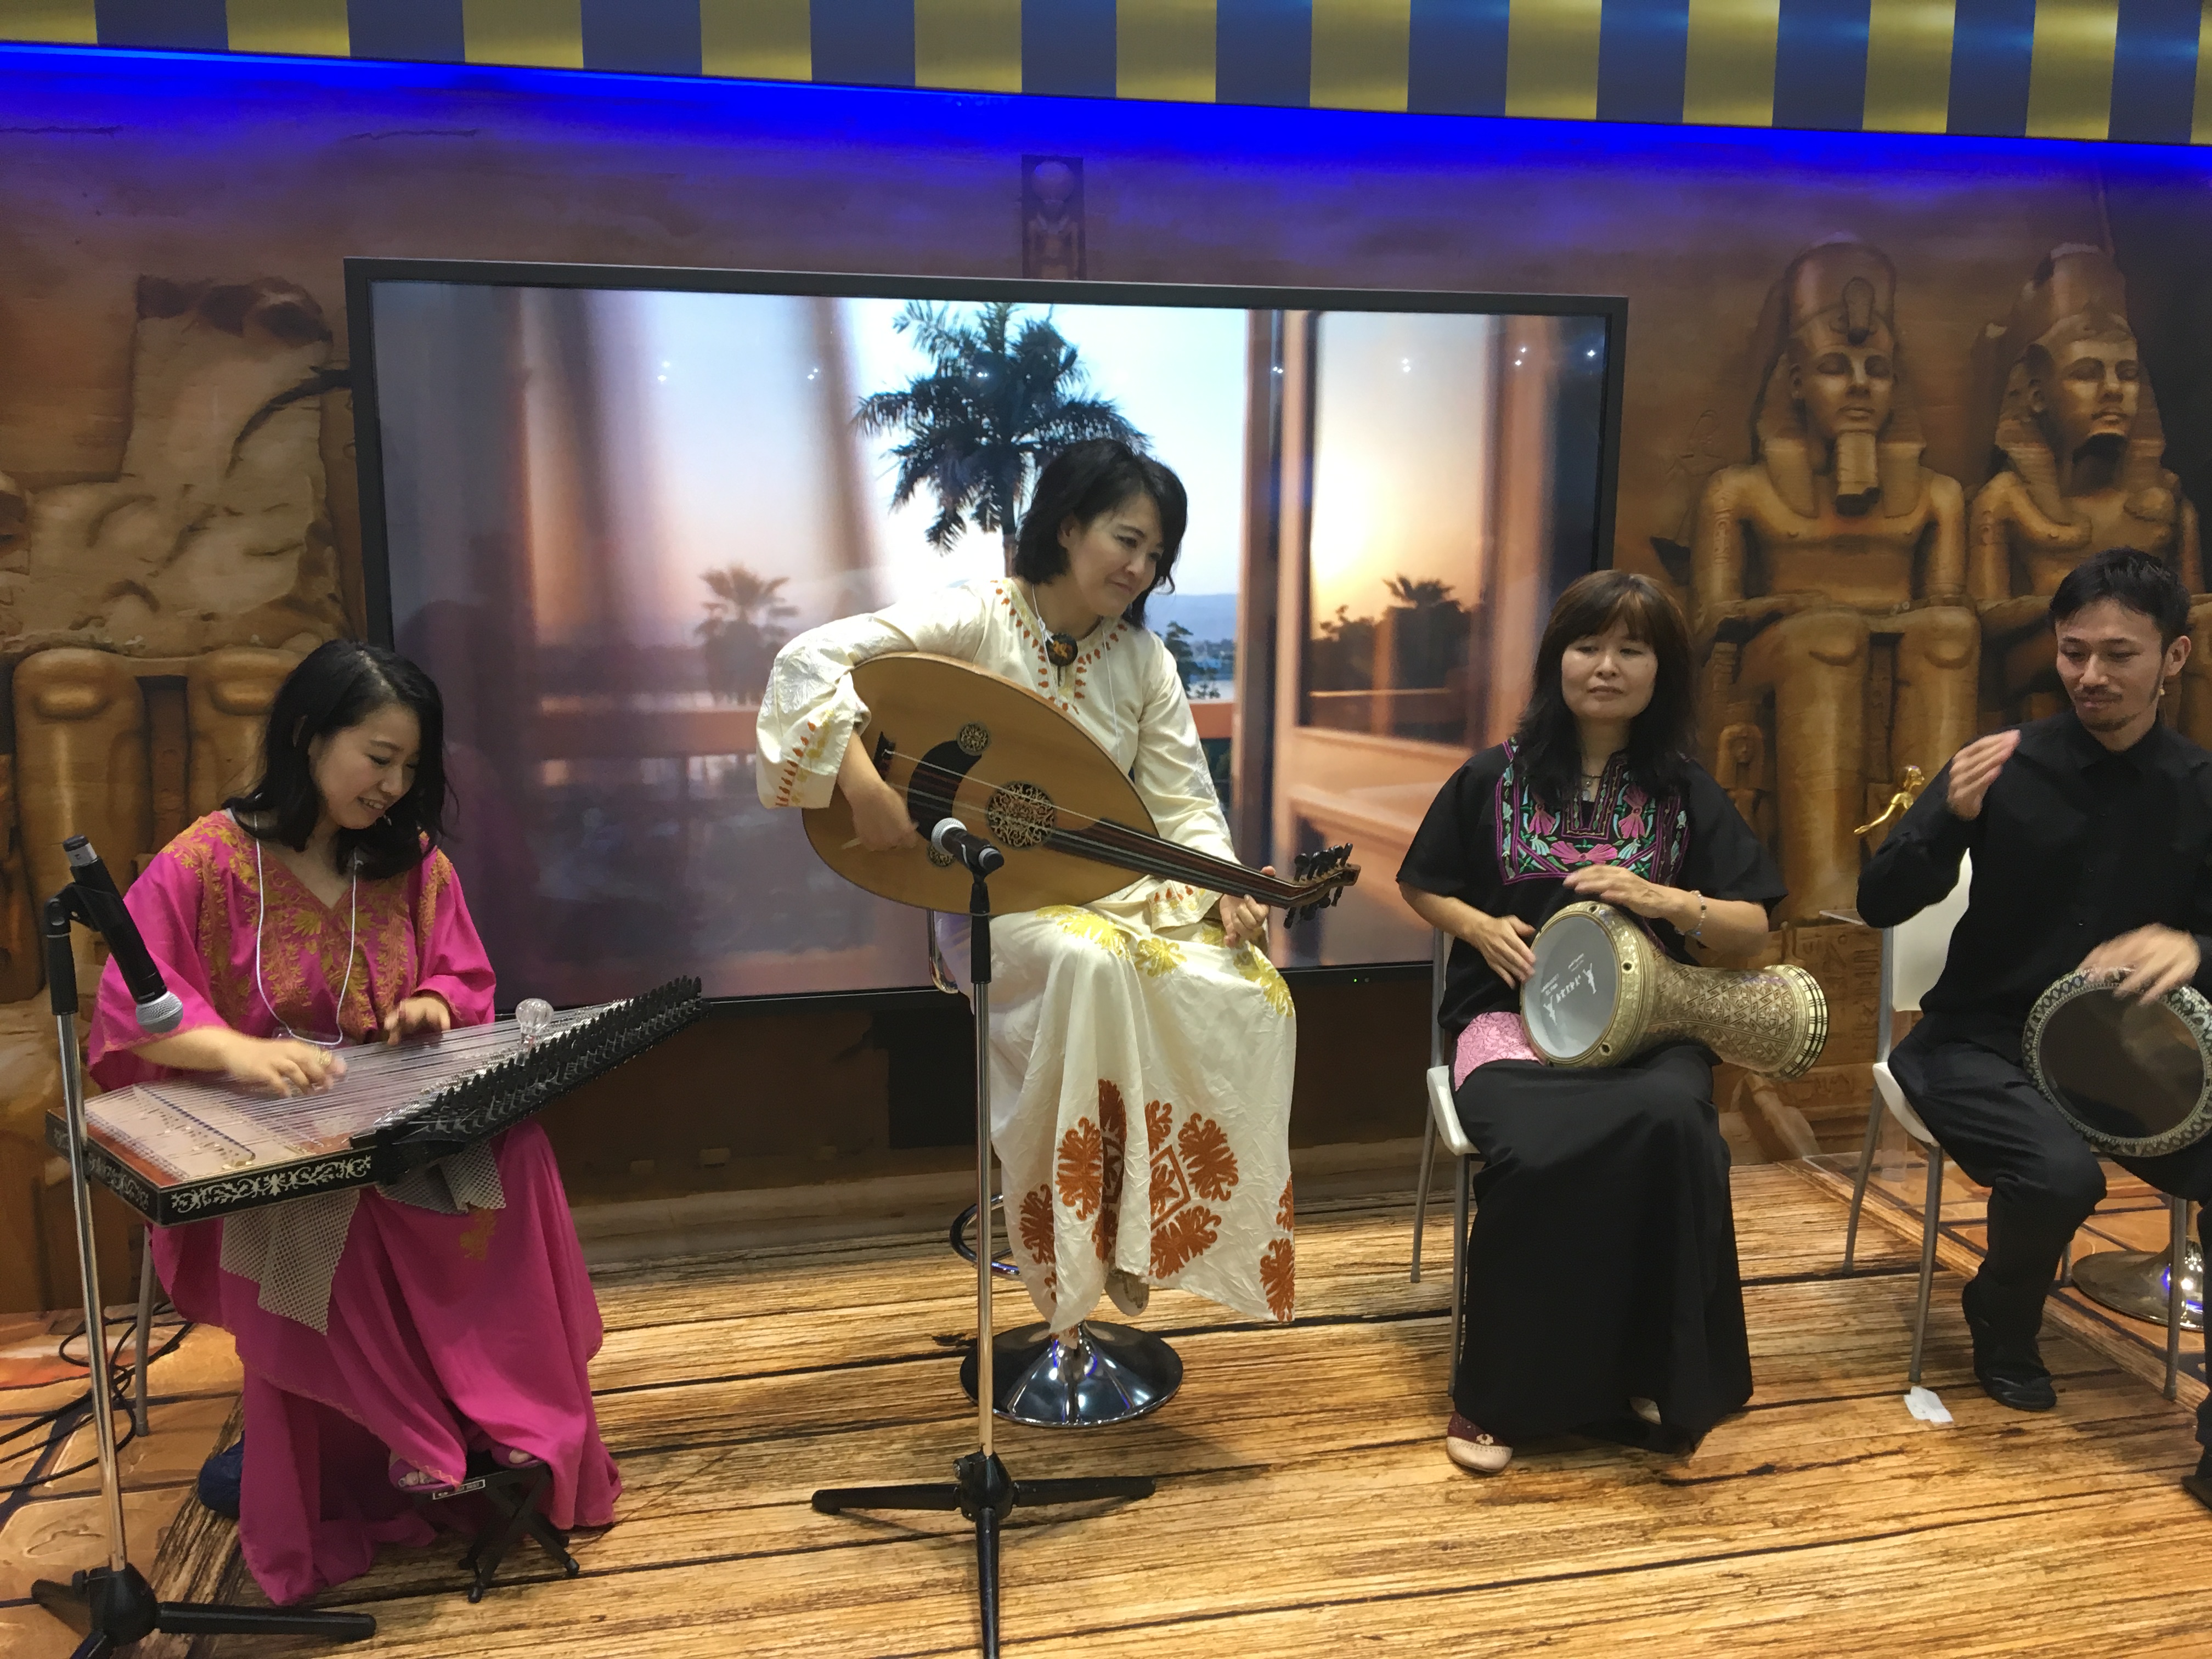 Show de música oriental durante a feira de viagens no Japão